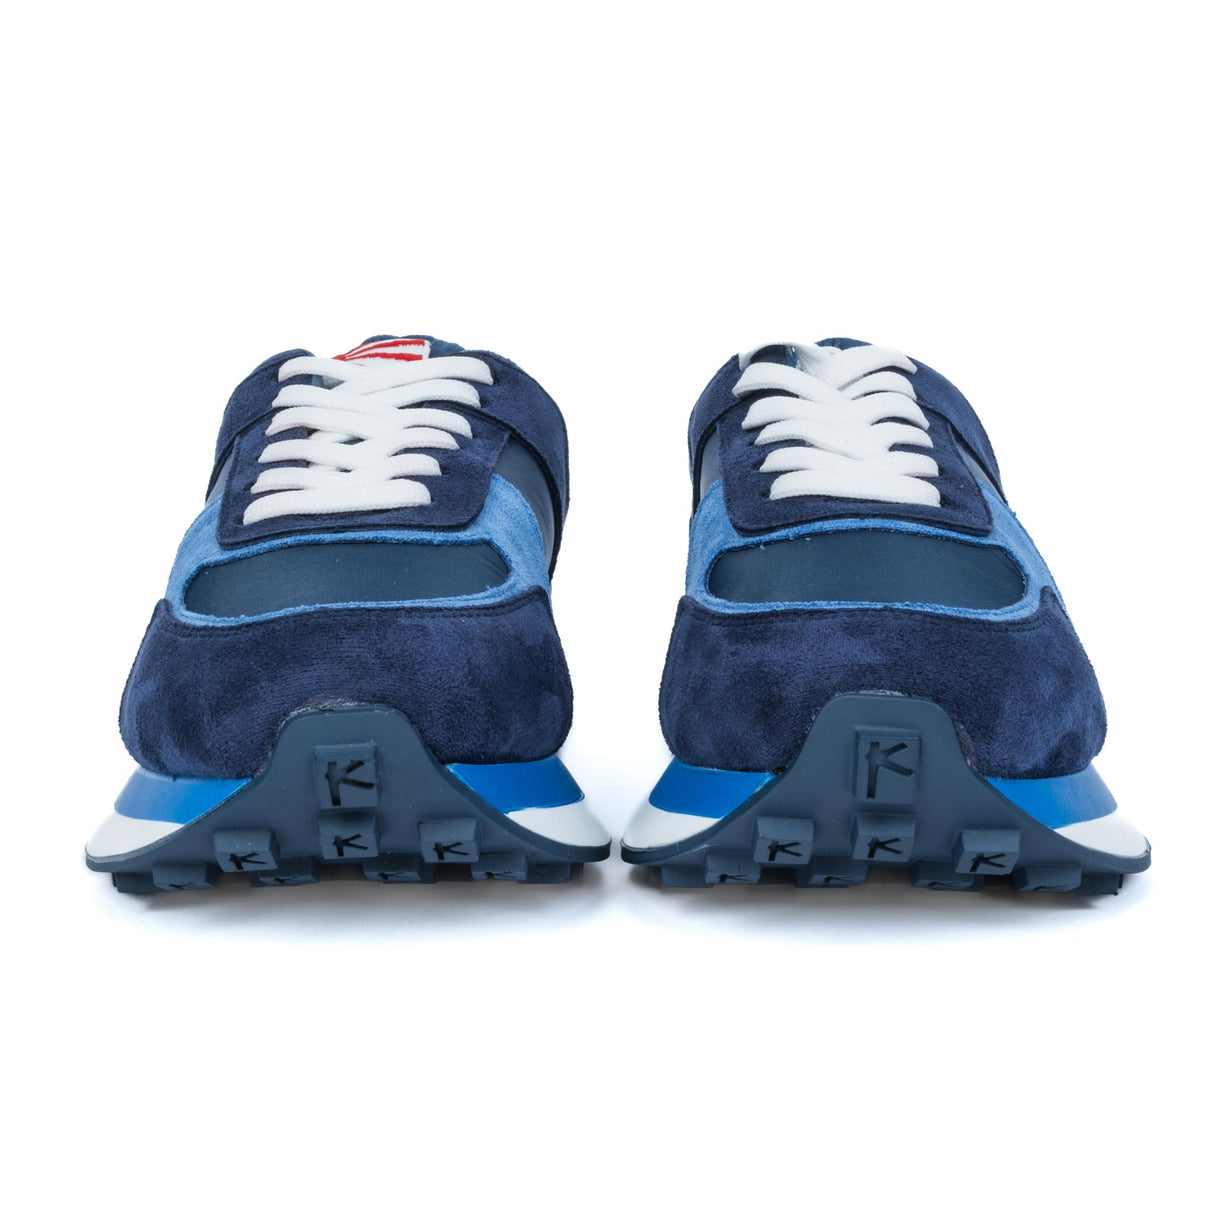 Kejo Sneakers Kj9103 Blue